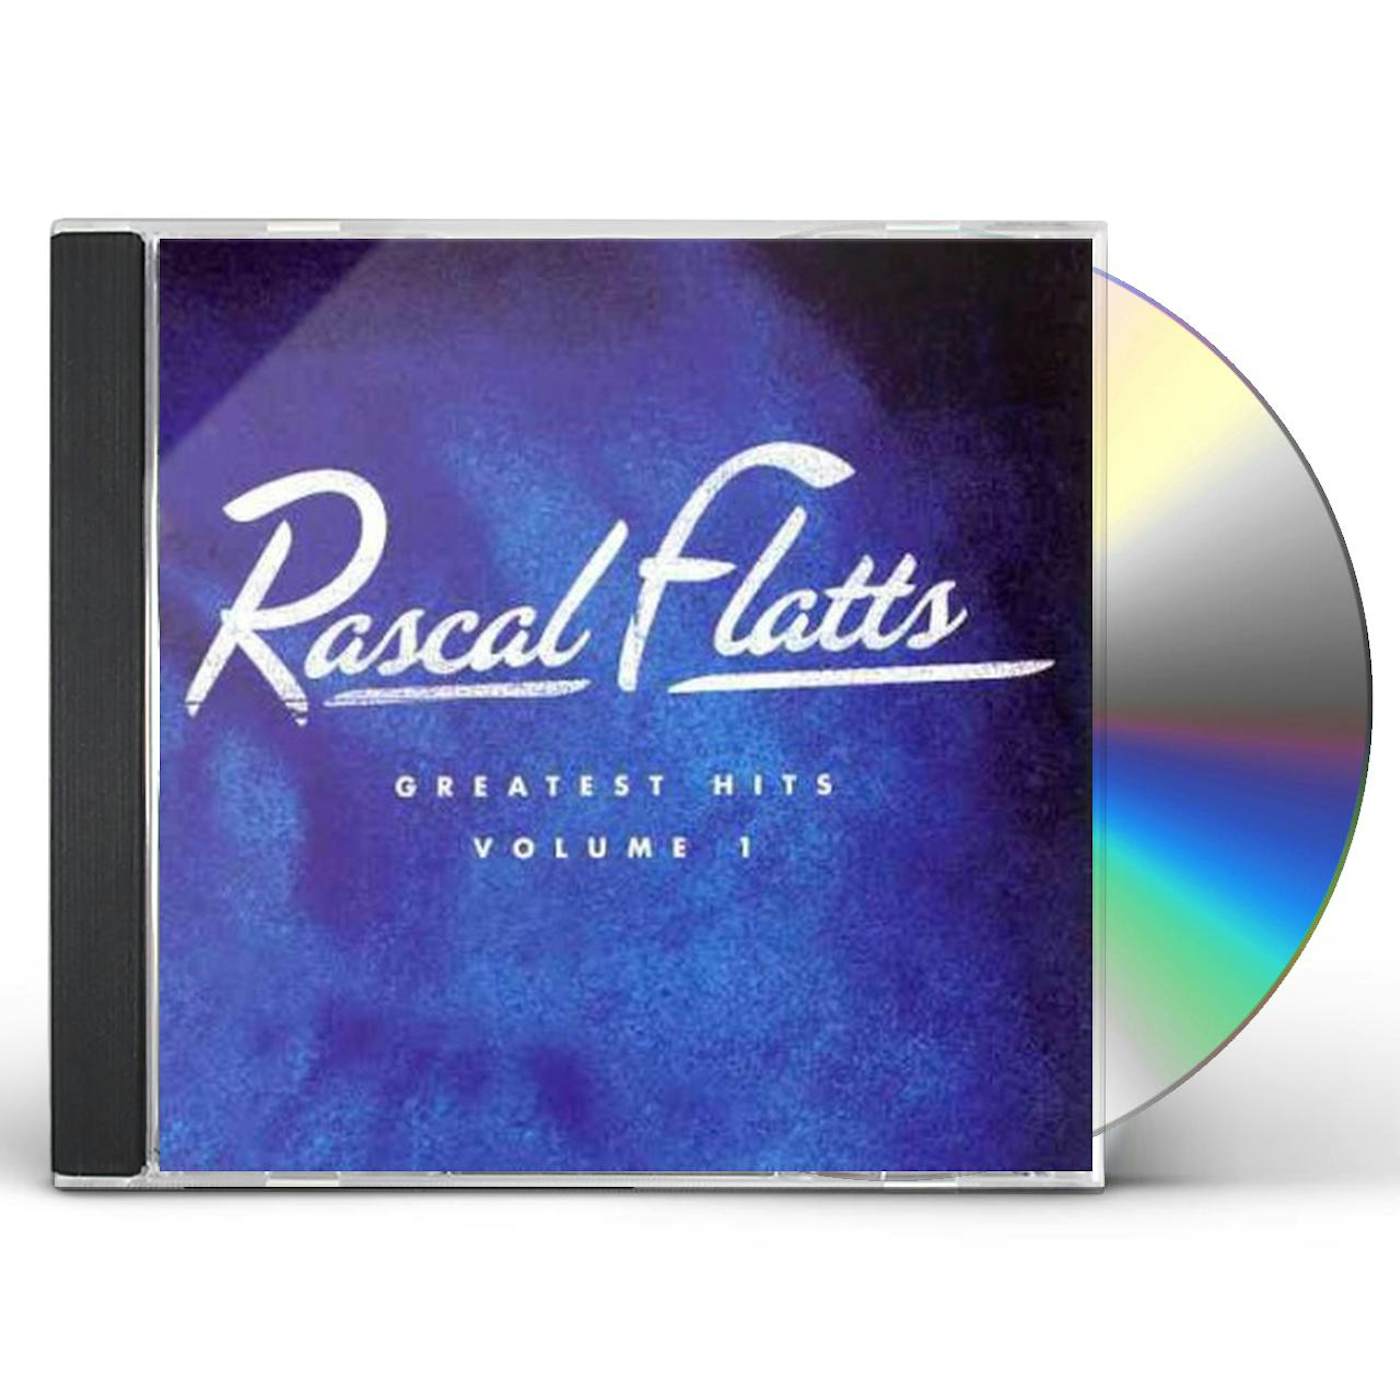 Rascal Flatts GREATEST HITS 1 CD